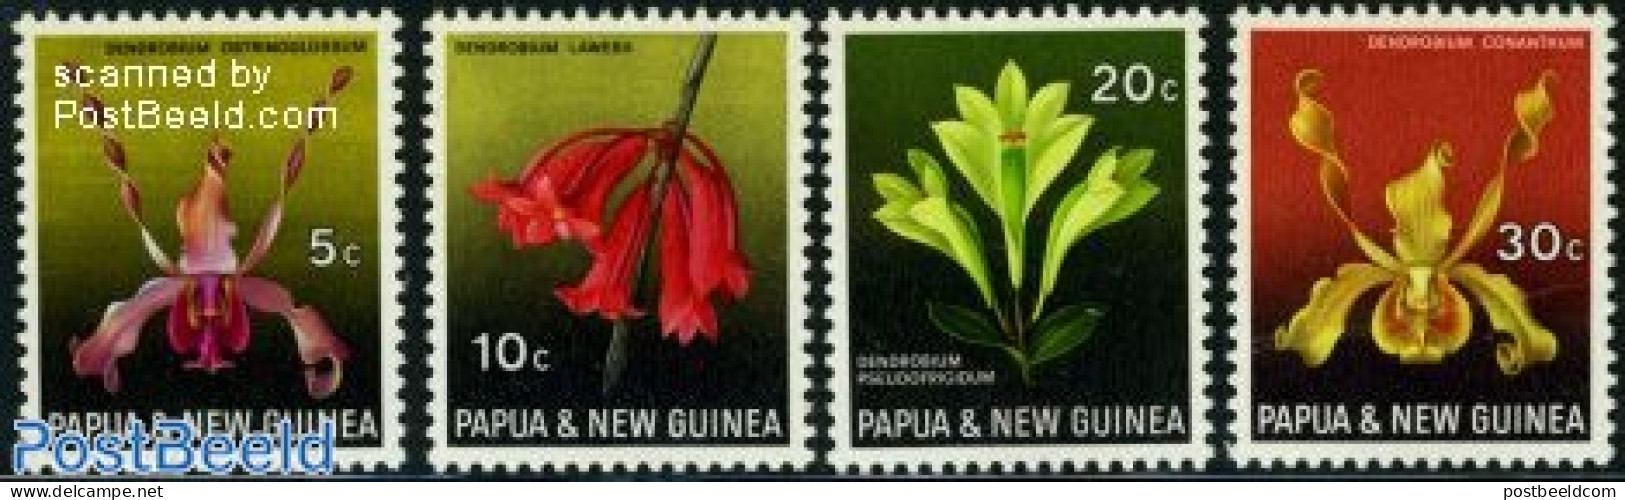 Papua New Guinea 1969 Orchids 4v, Mint NH, Nature - Flowers & Plants - Orchids - Papouasie-Nouvelle-Guinée